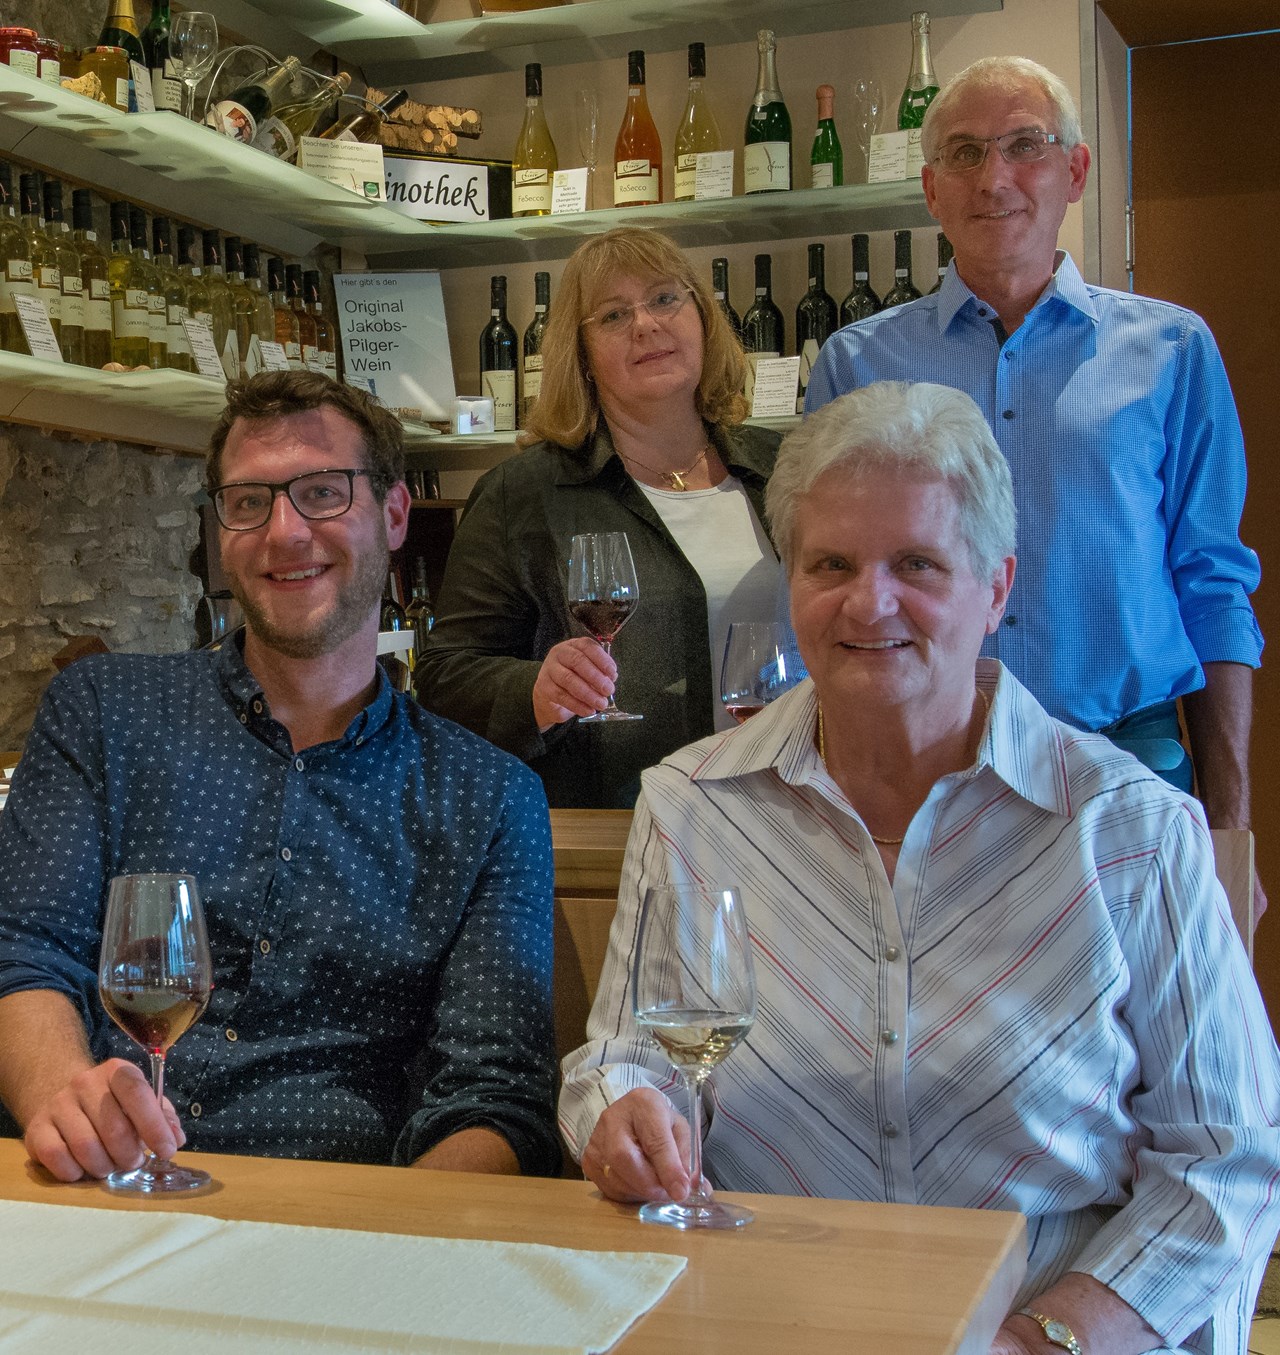 Weingut Feser mit Vinothek, Ferienwohnungen & Erlebnis ospite Famiglia di viticoltori Feser